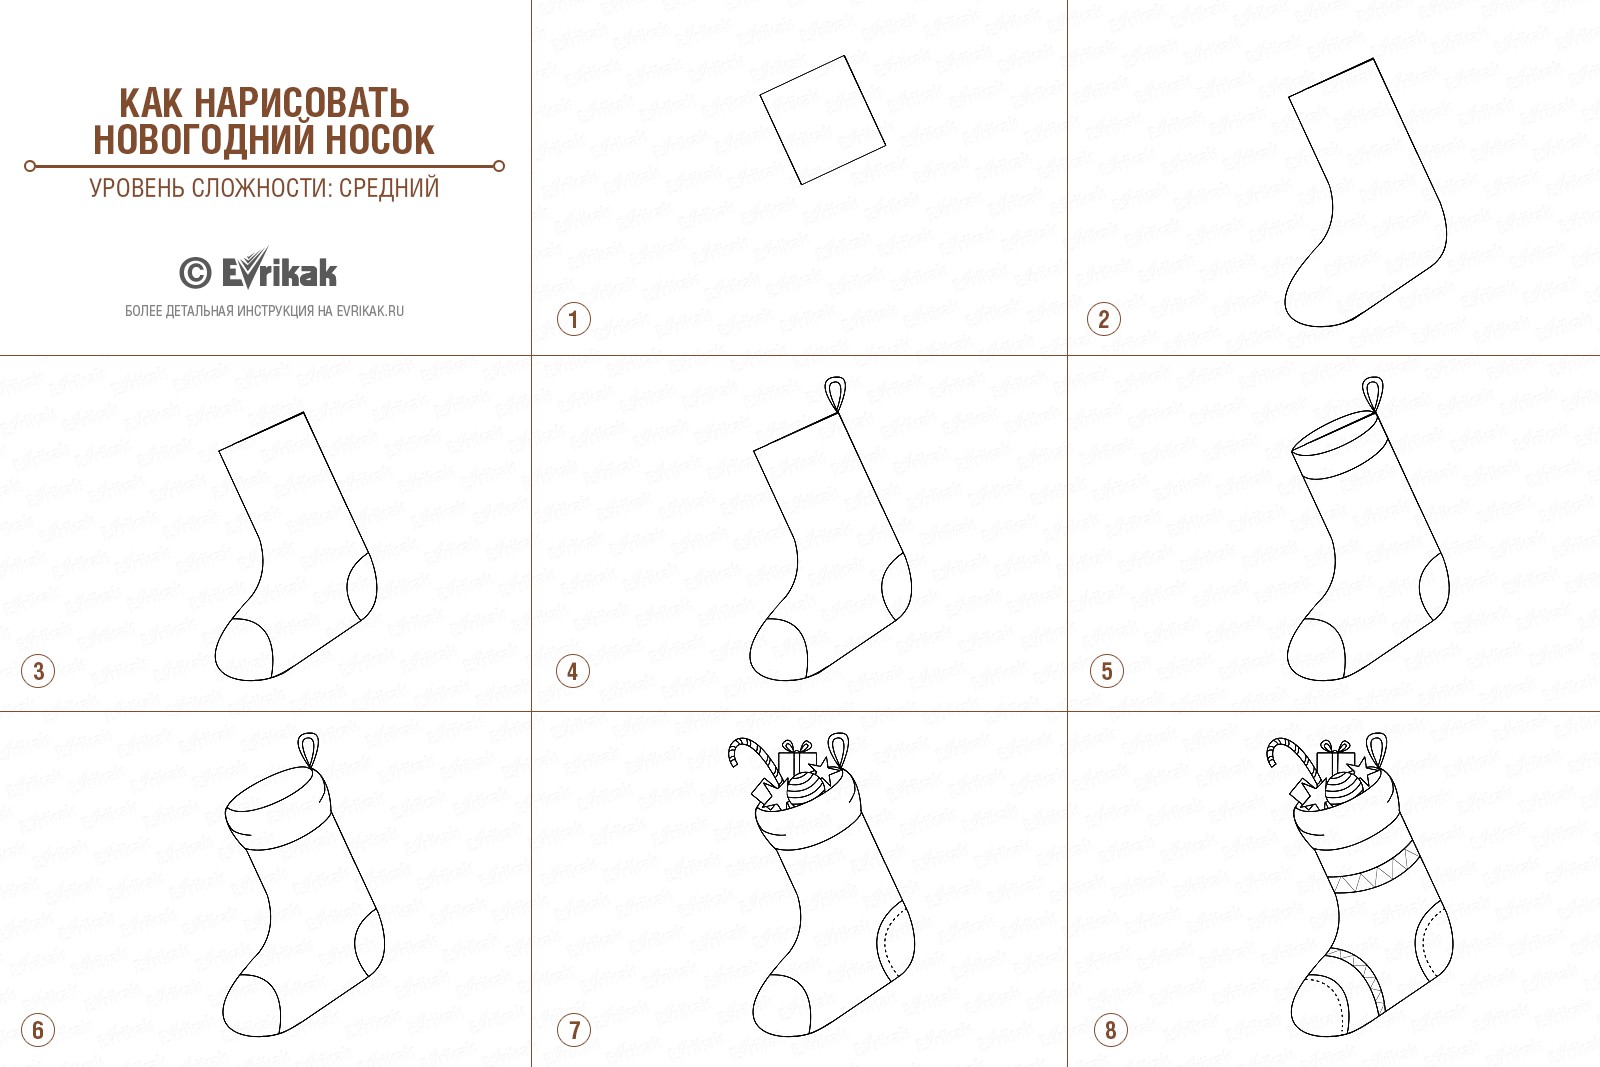 Коллаж с этапами рисования новогоднего носка